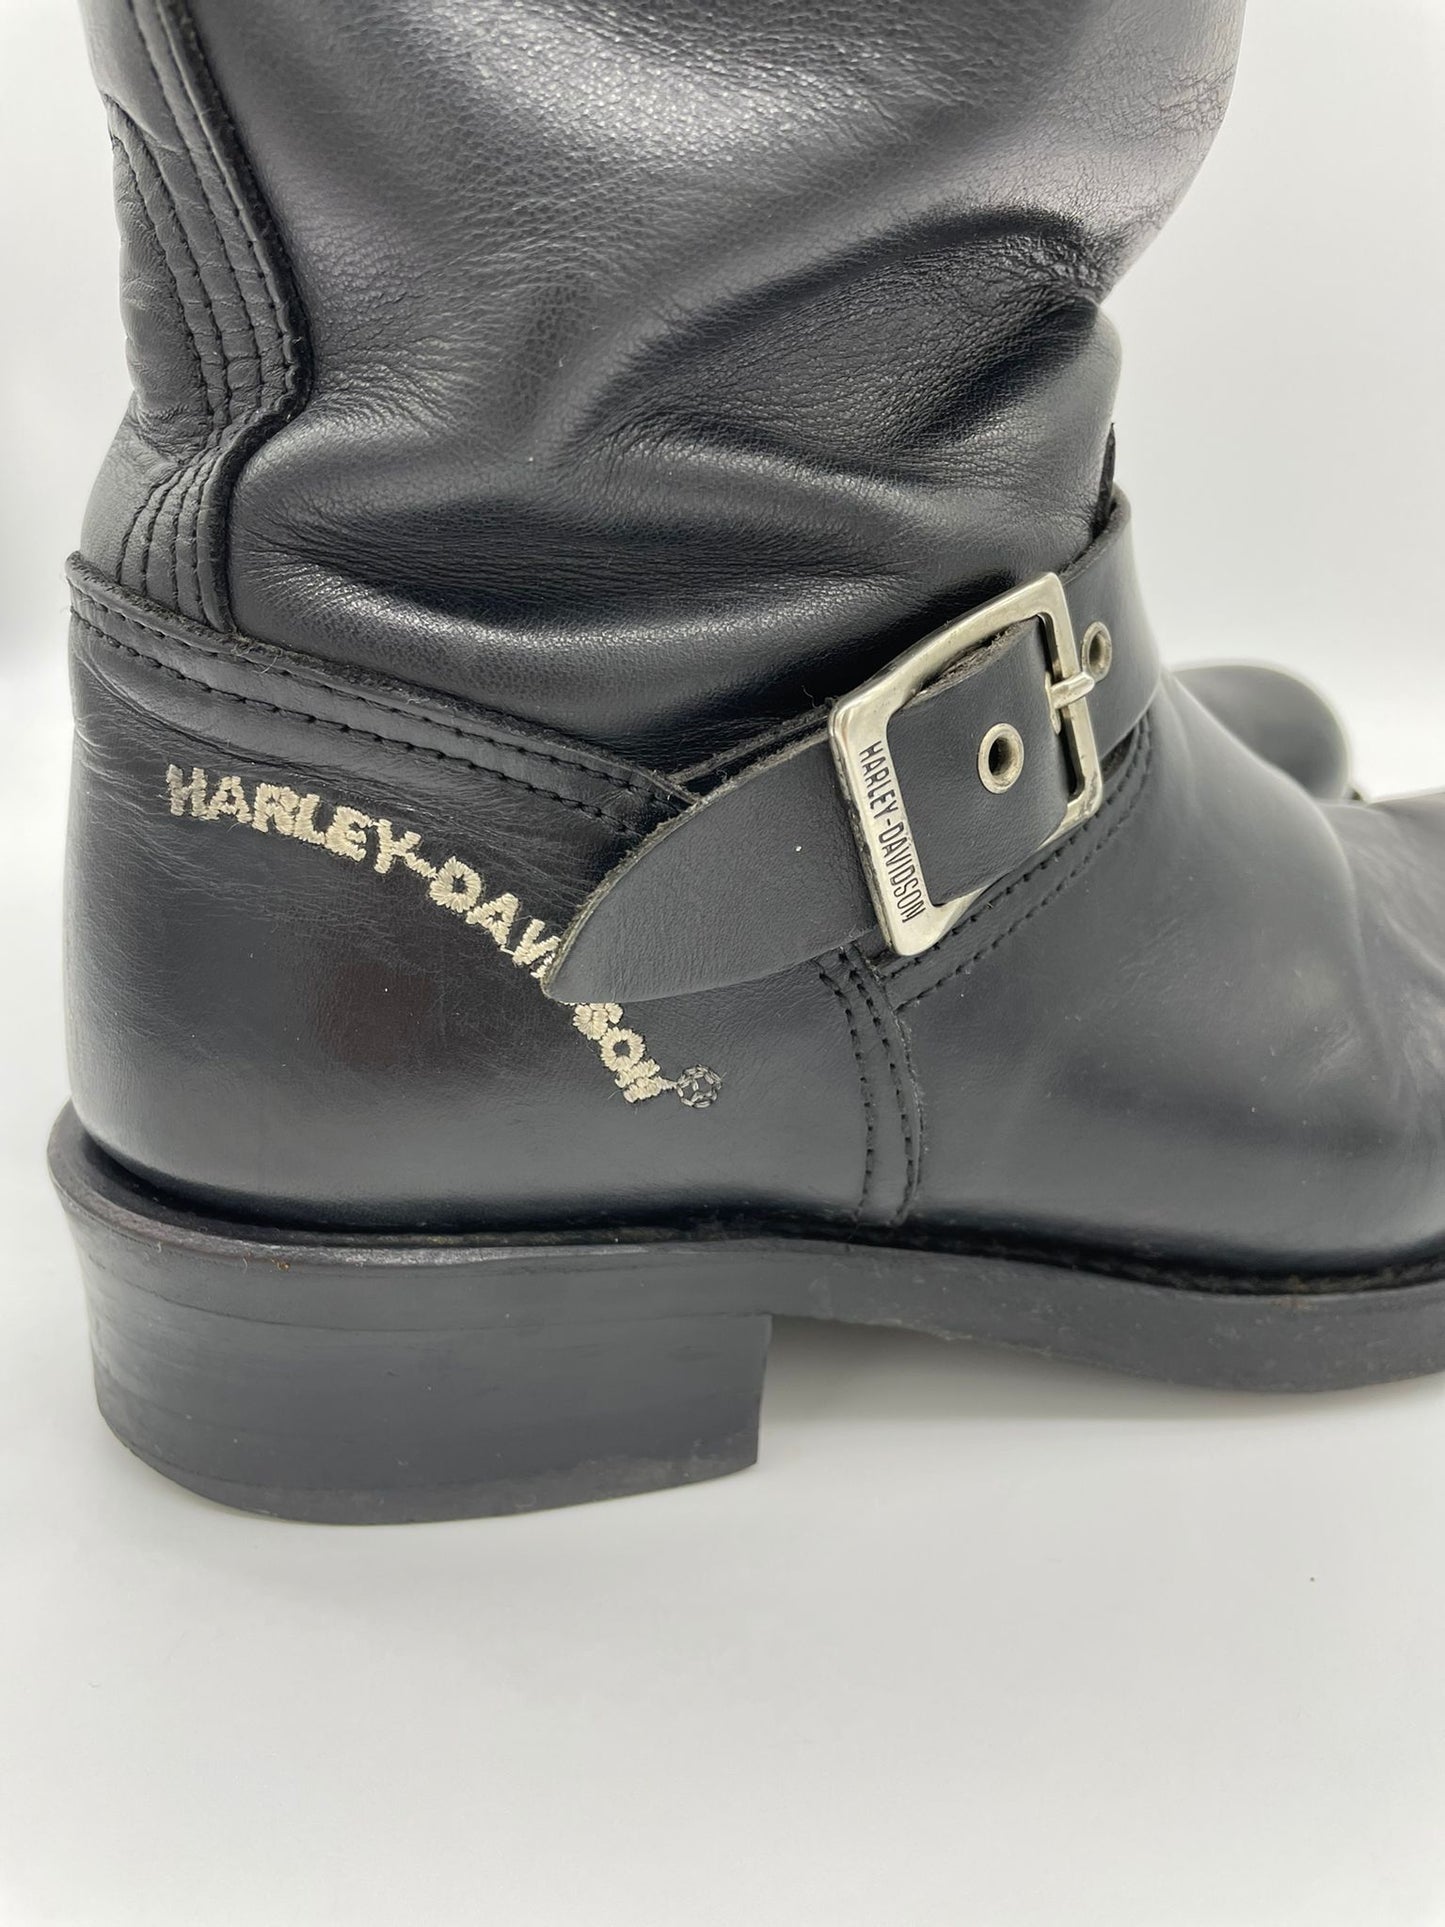 Harley Davison Biker boots